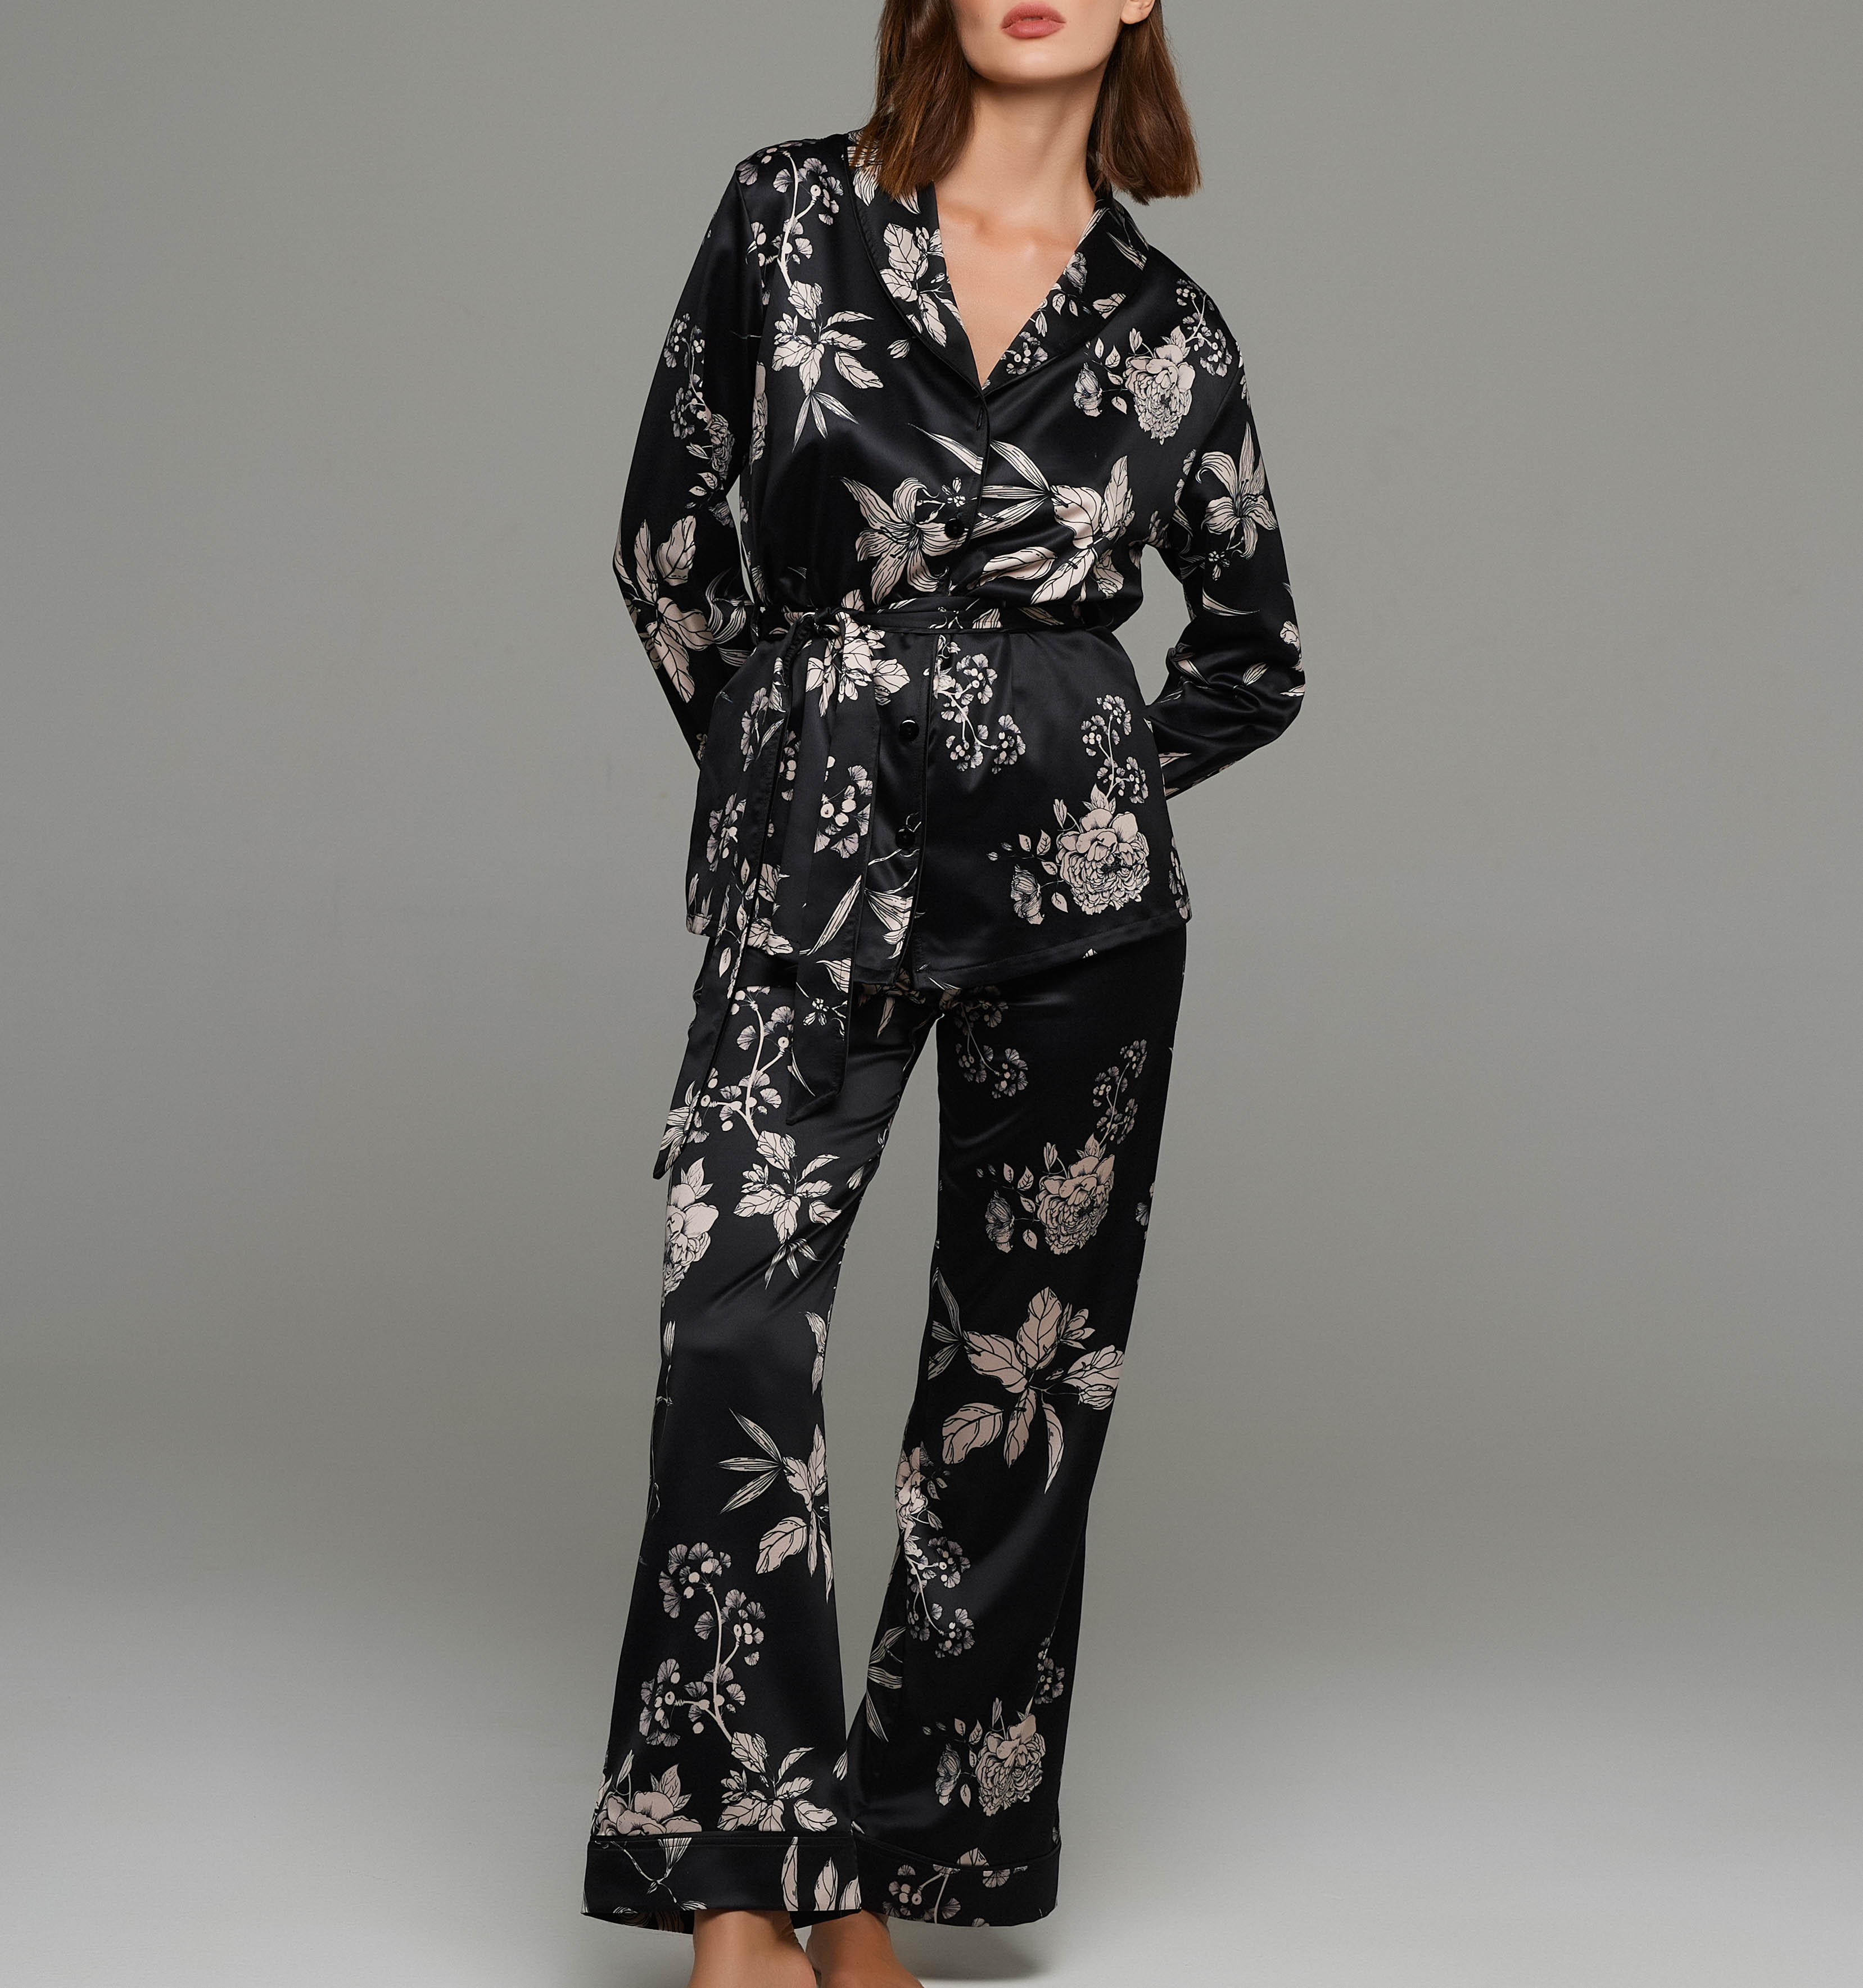 Satin floral pajama set in black